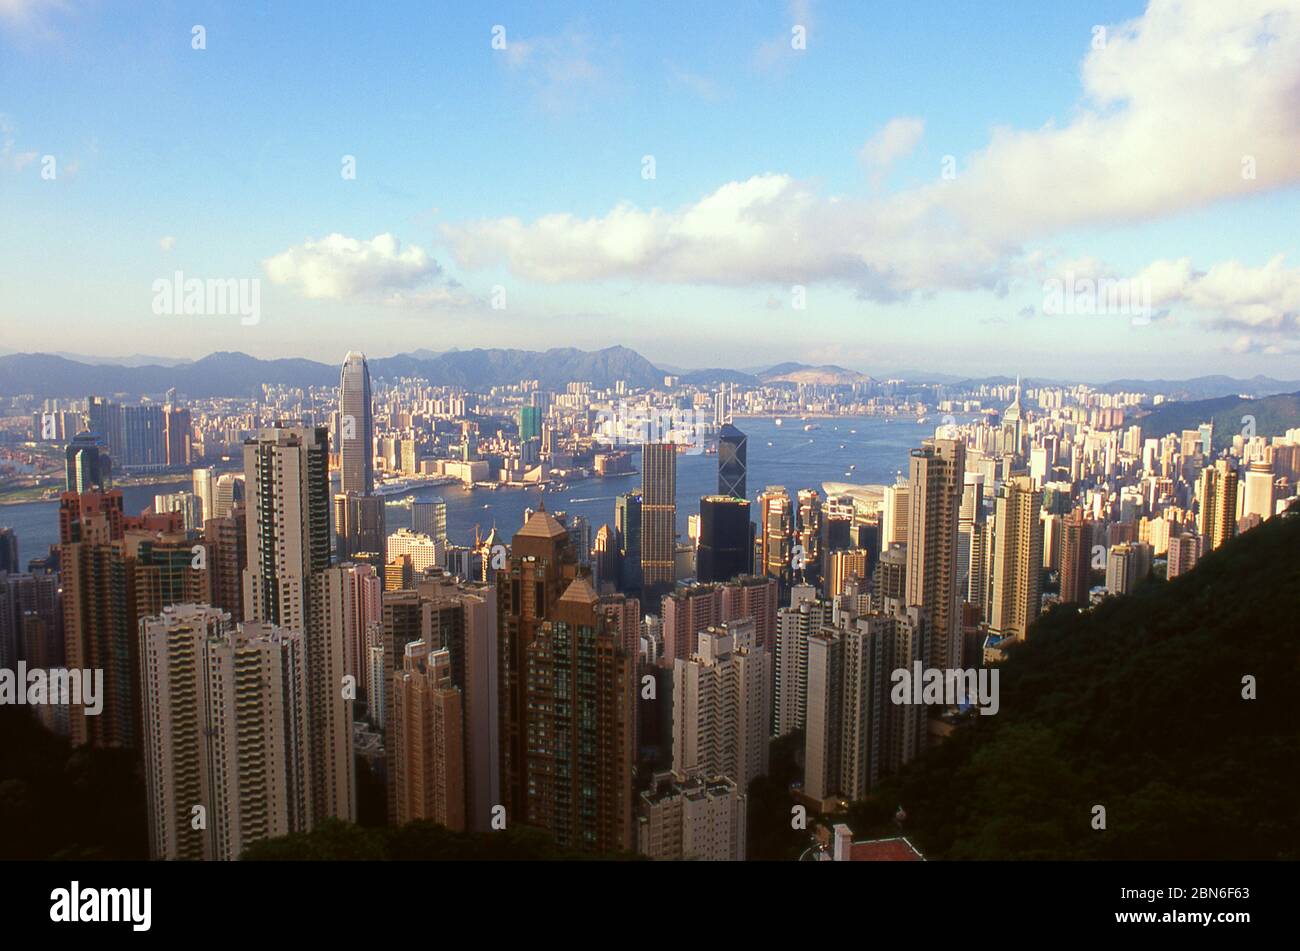 China: Hong Kong Insel und Hafen vom Victoria Peak aus gesehen, mit Kowloon im Hintergrund, Hong Kong Insel. Ursprünglich ein dünn besiedeltes Gebiet o Stockfoto